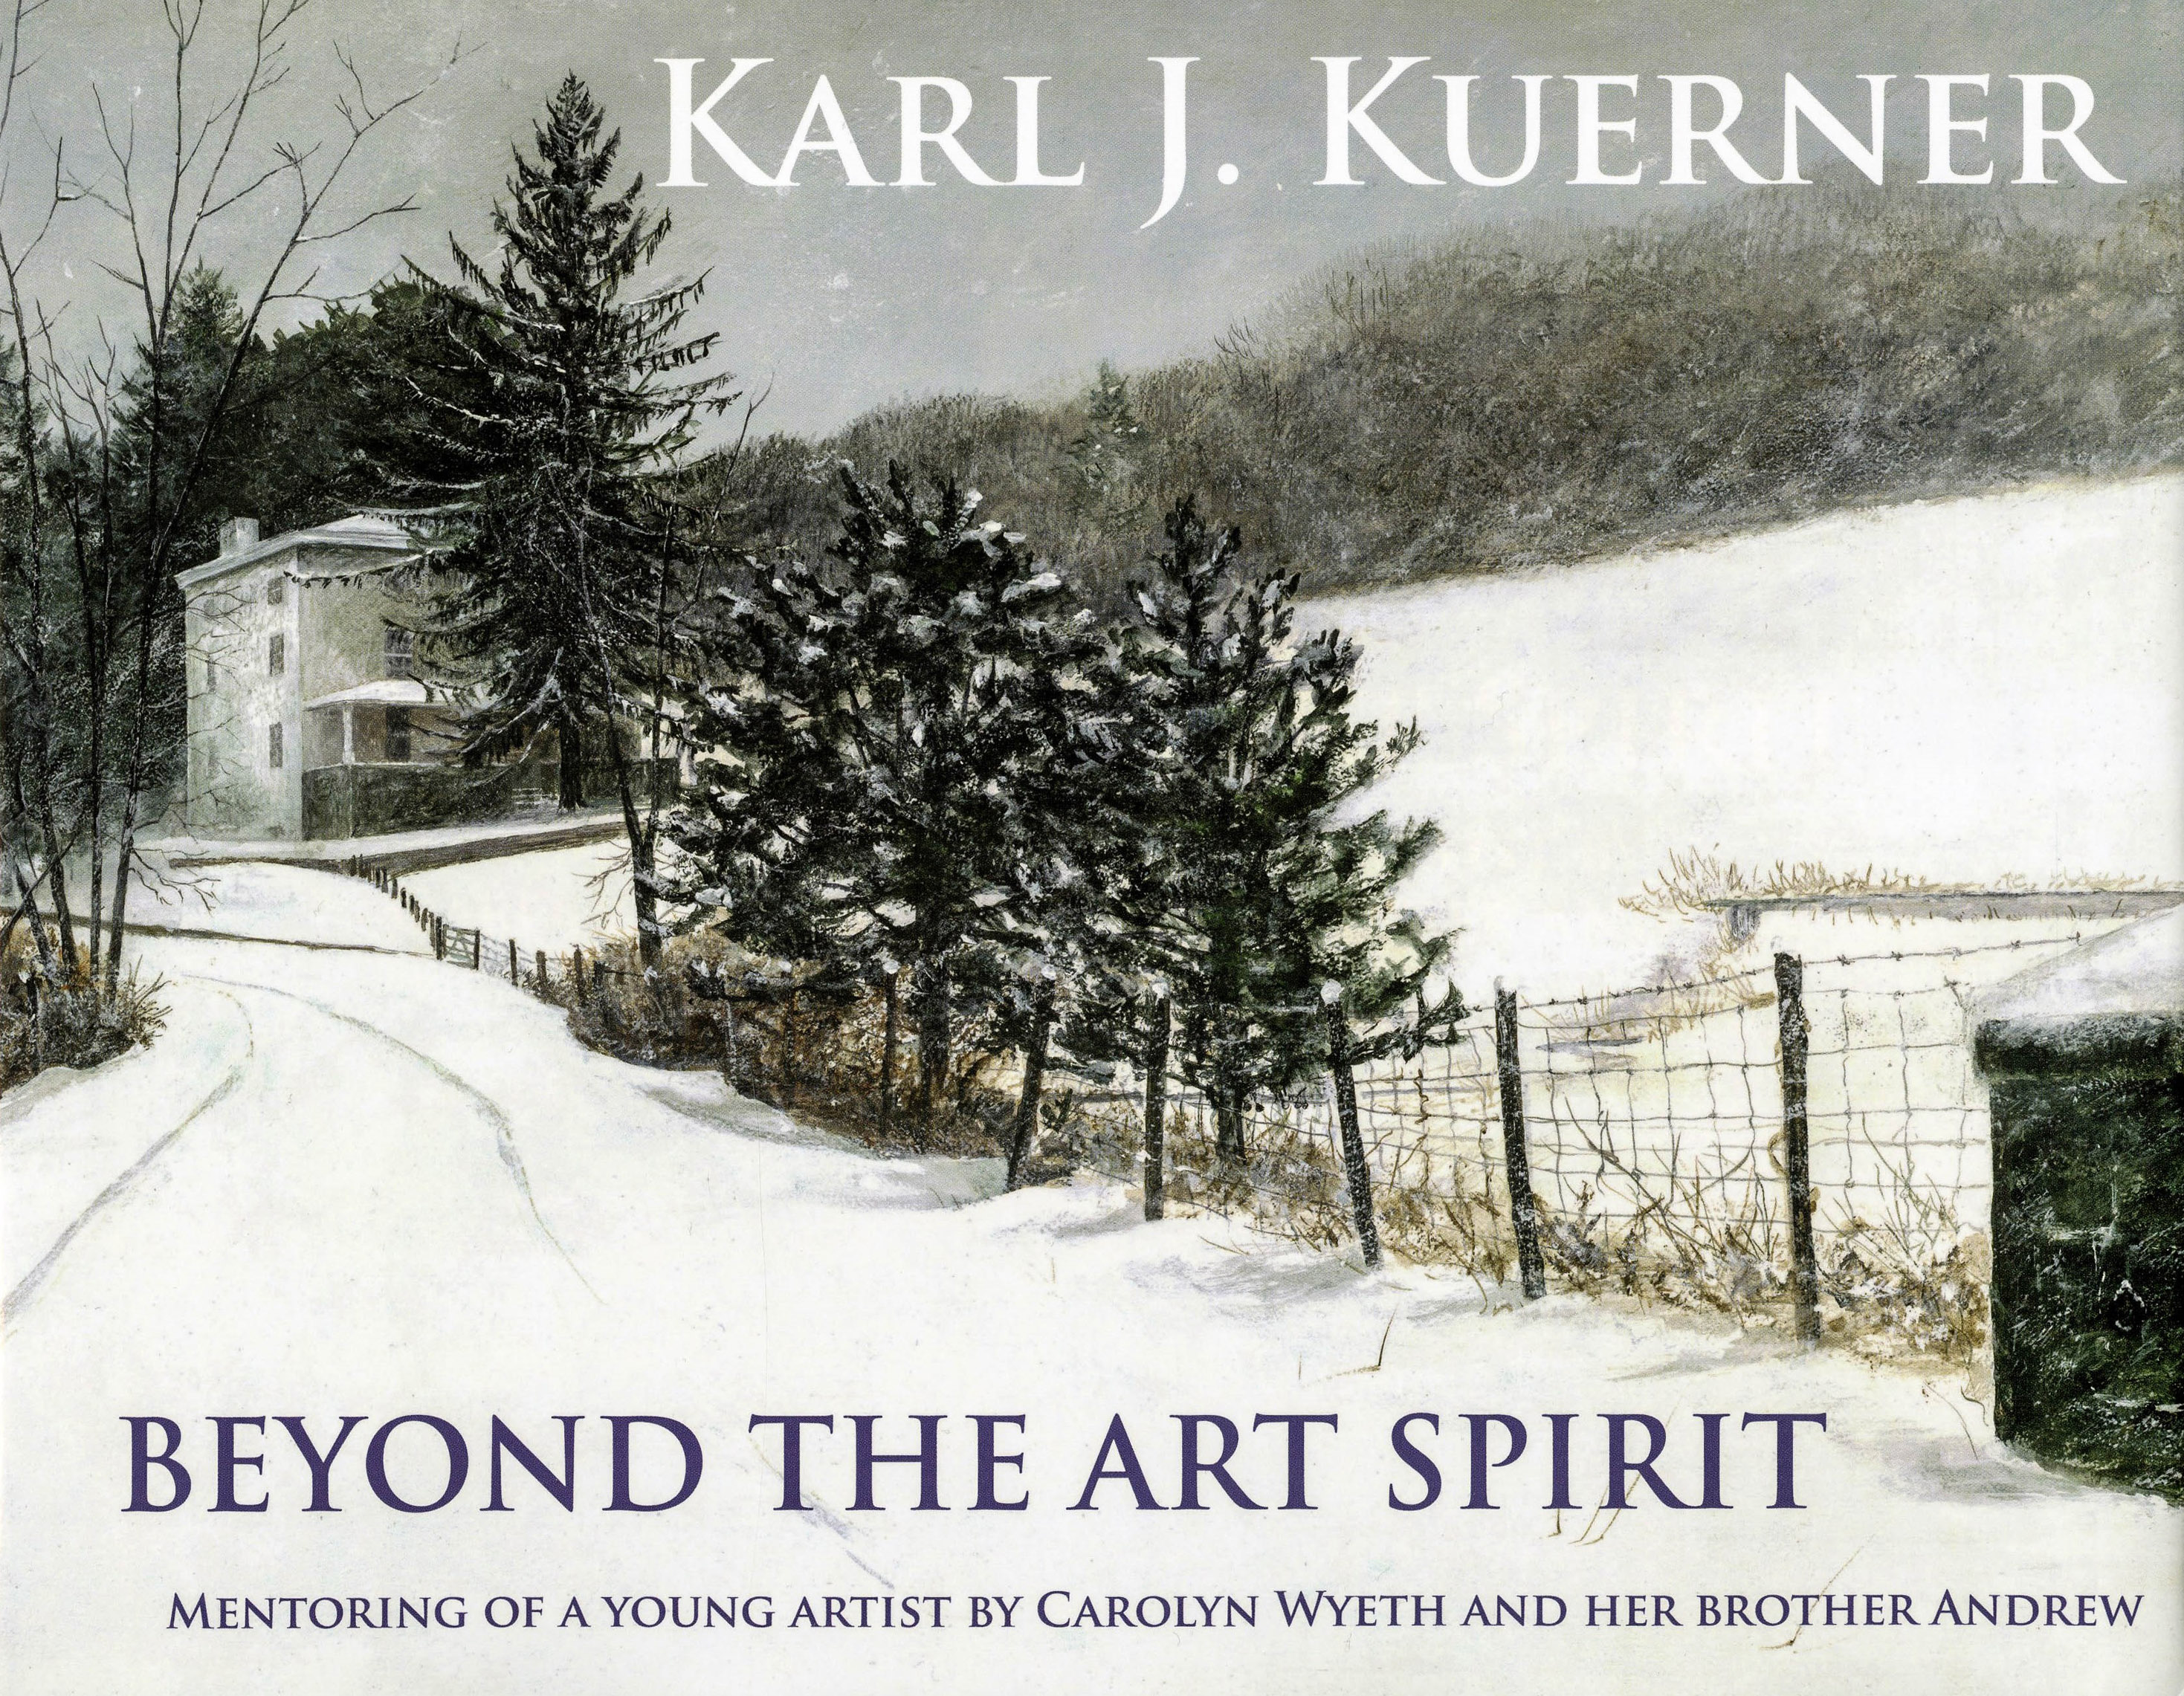 Karl Kuerner book signing